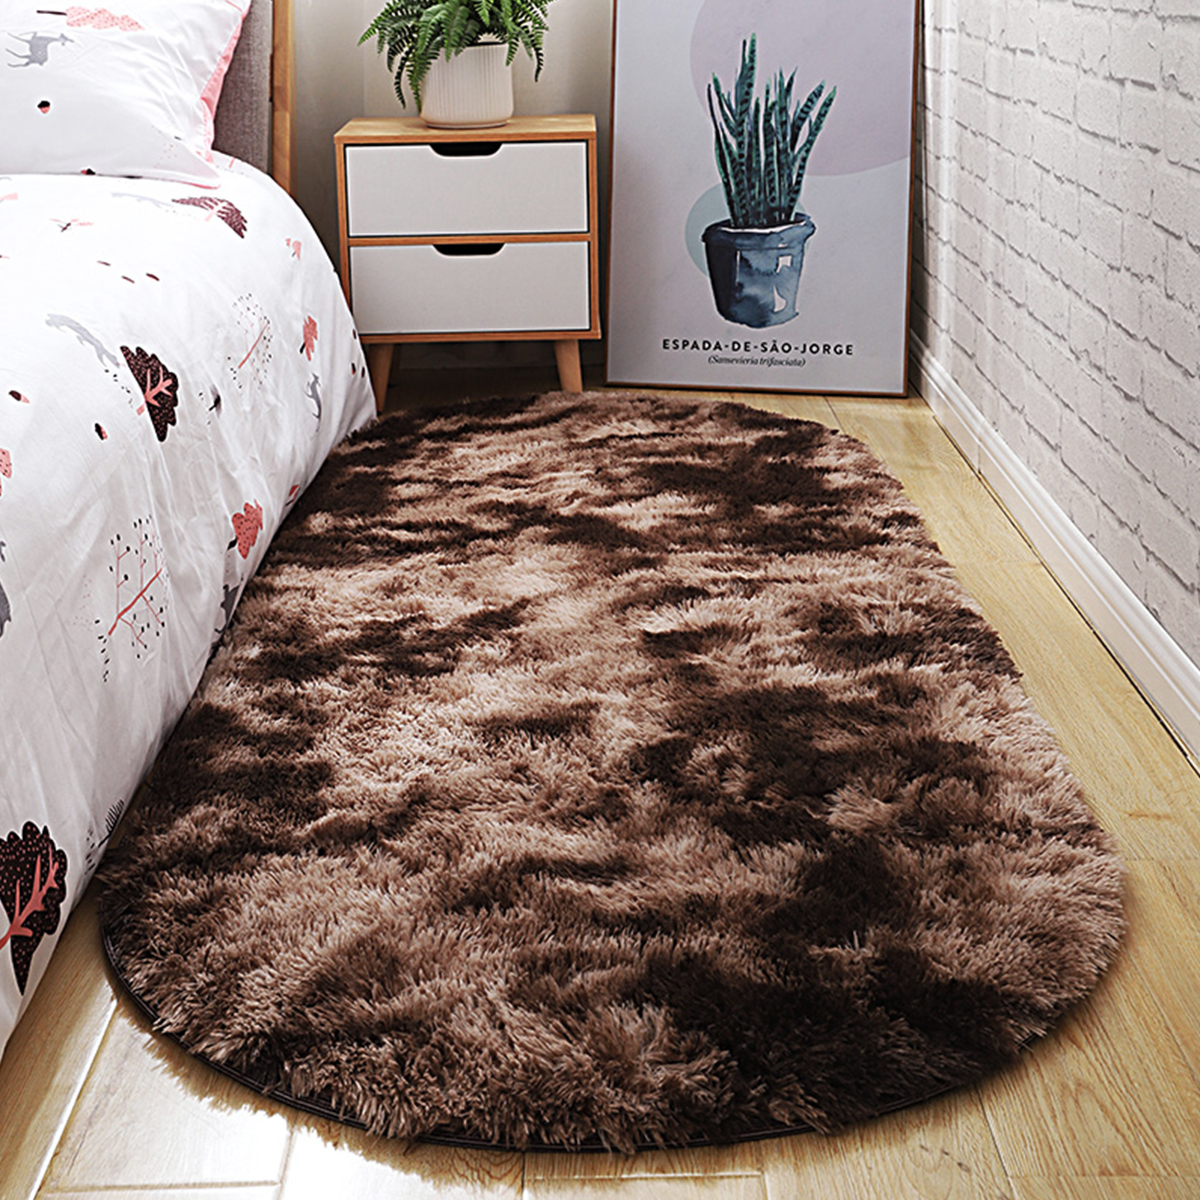 Long-Variegated-Tie-dye-Gradient-Carpet-Living-Room-Bedroom-Bedside-Blanket-Coffee-Table-Cushion-Ful-1730424-2